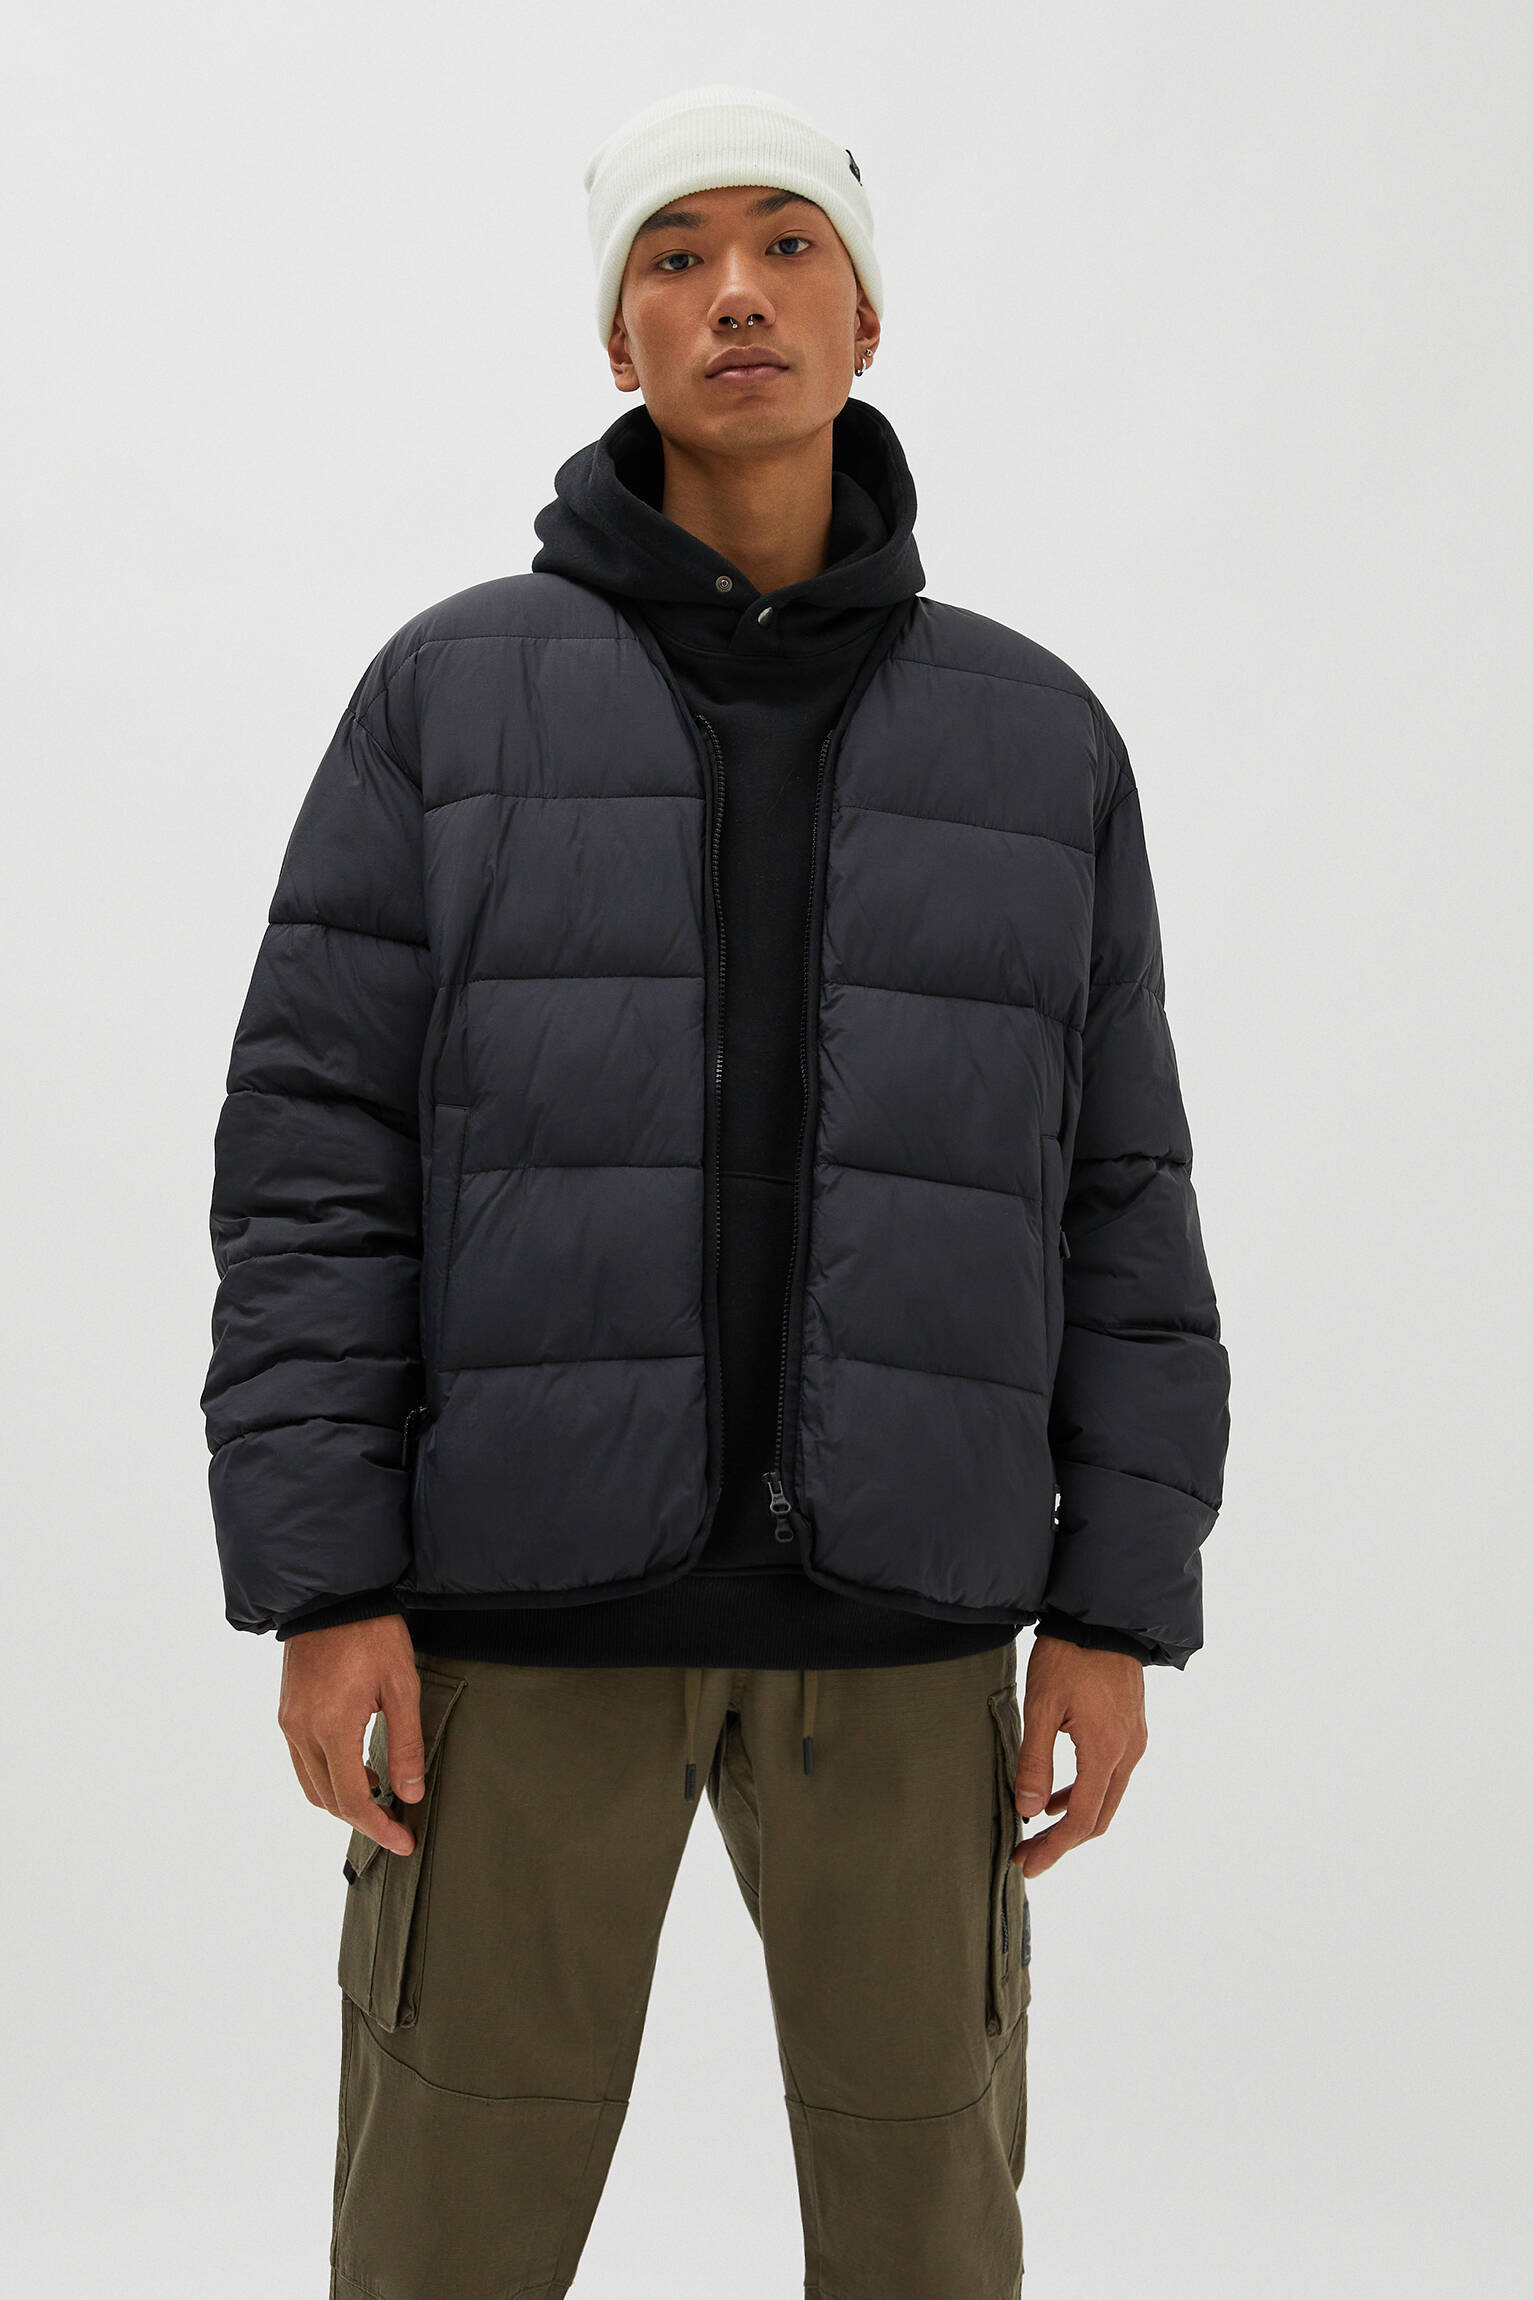 Modalite.net - Pull & Bear - Nylon puffer jacket